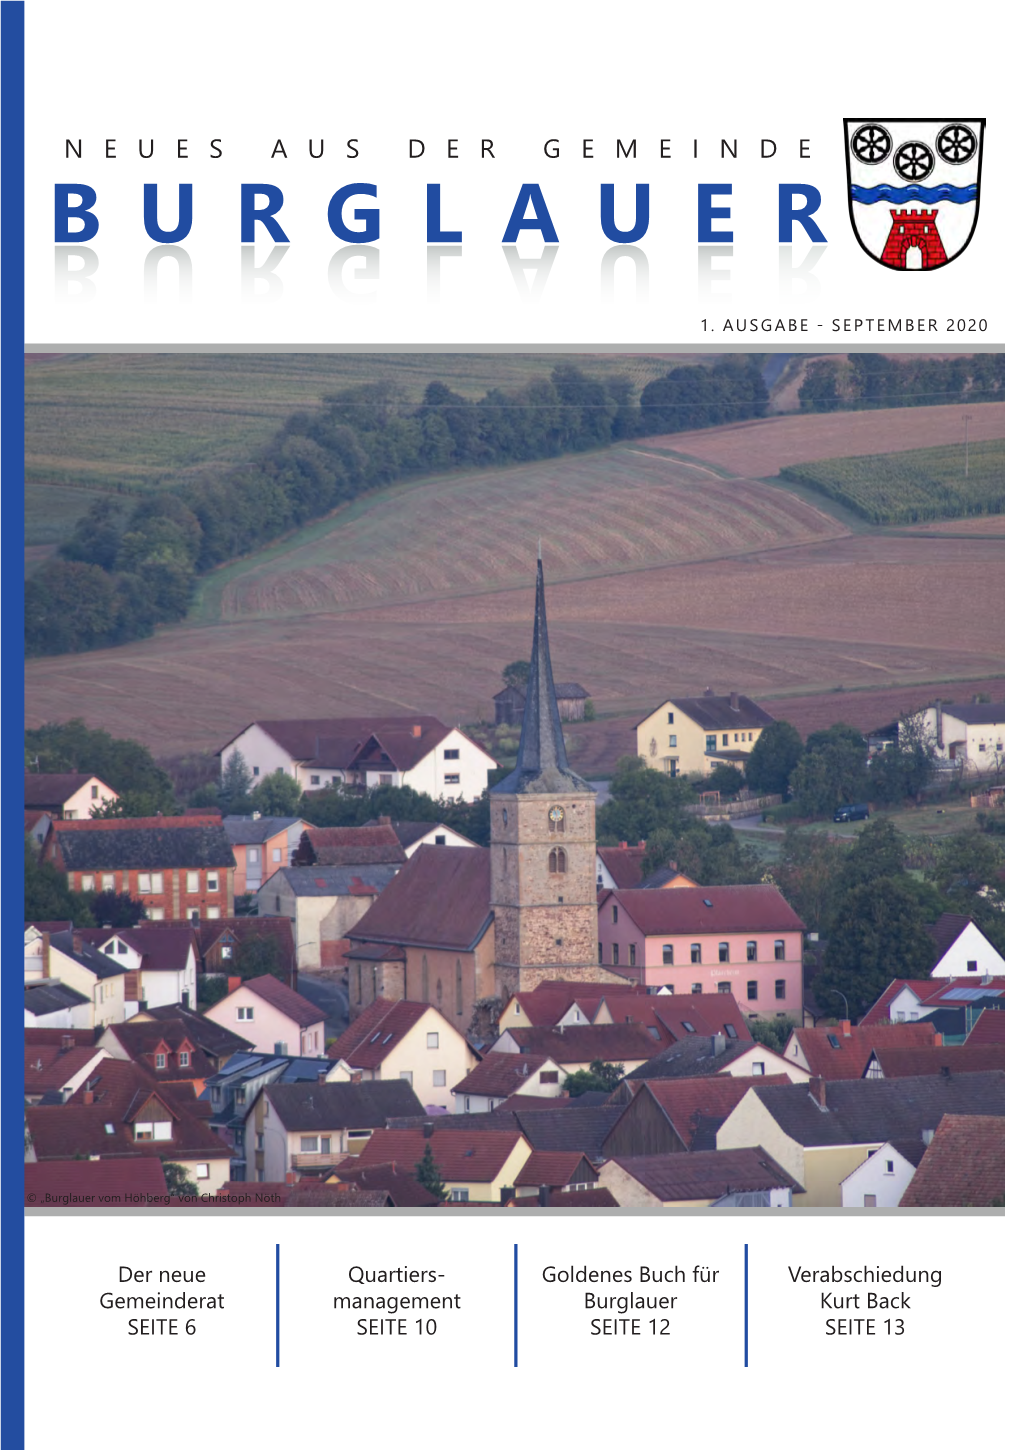 Gemeindeblatt Burglauer - Aus Dem Gemeinderat, Ausgabe September 2020" Von Linda Beer - VG Bad Neustadt A.D